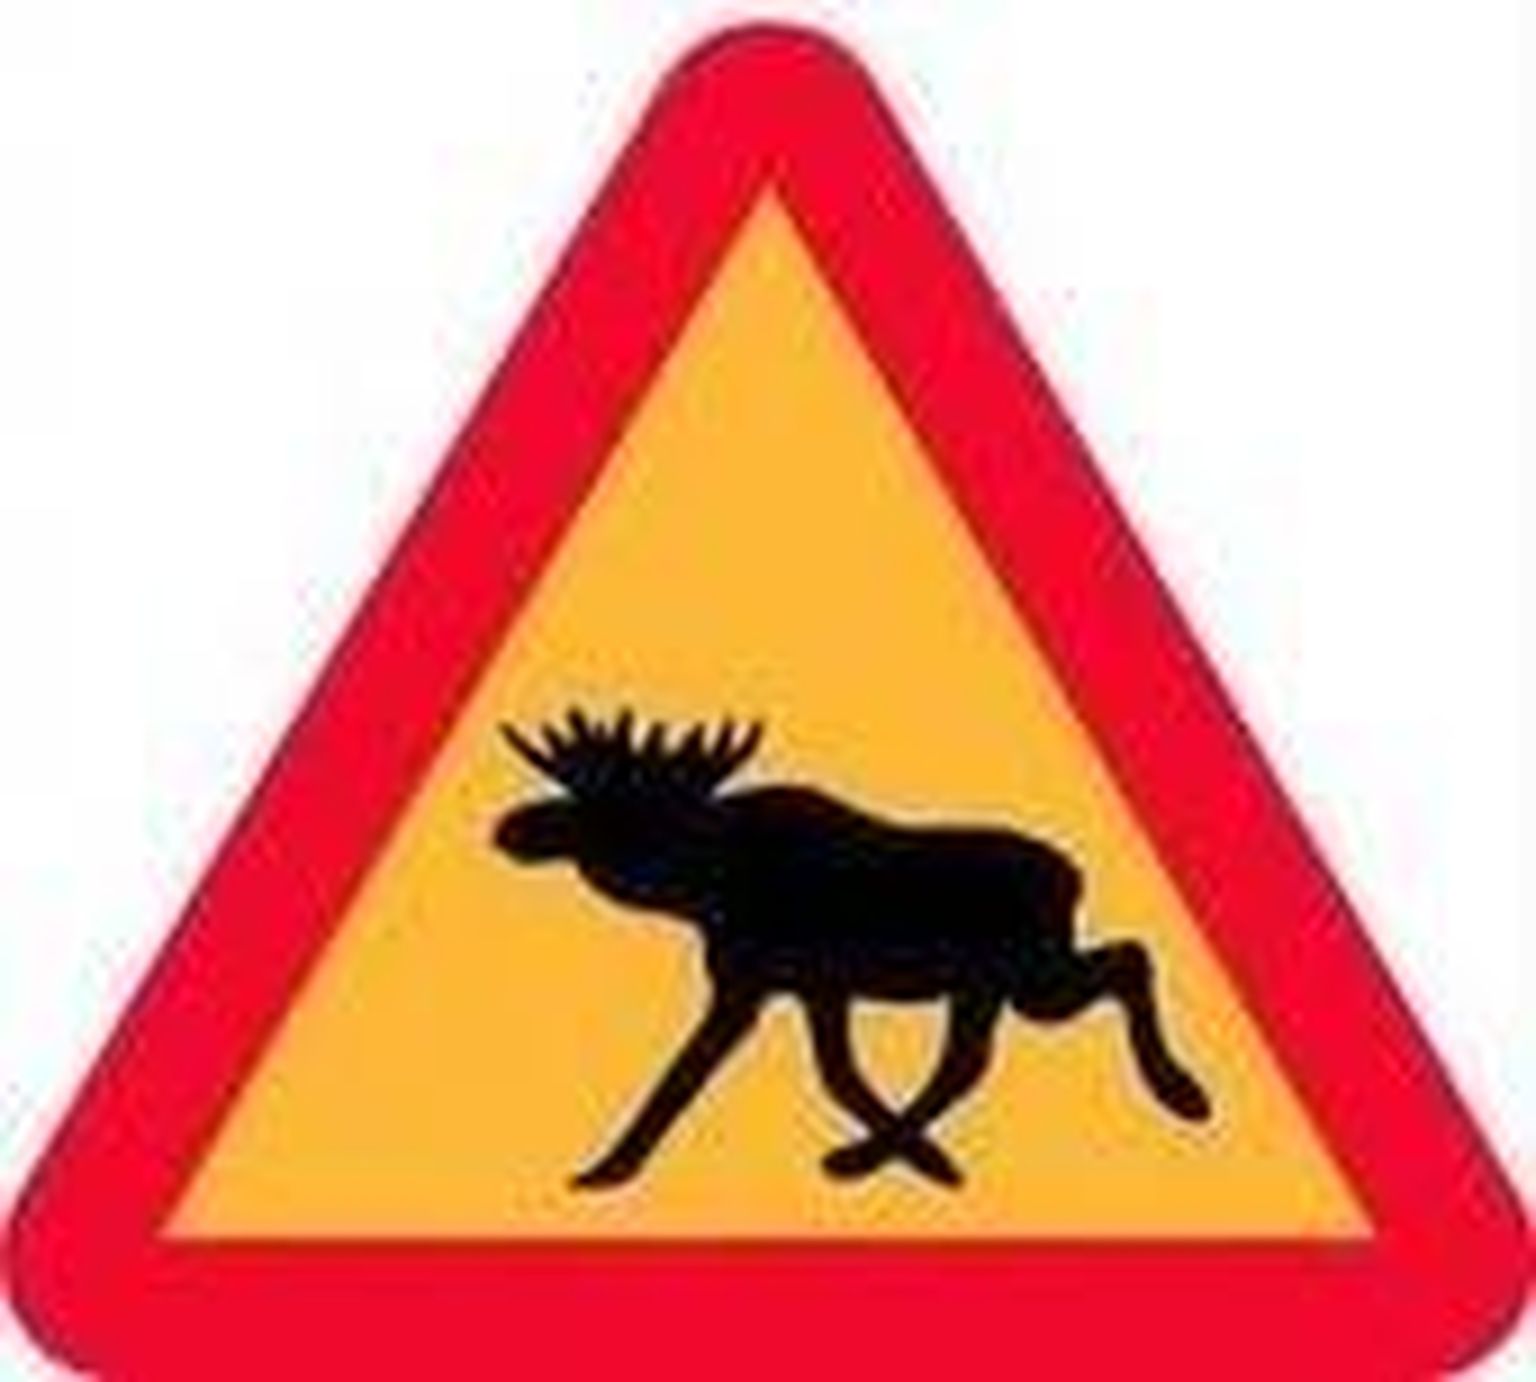 Liiklusmärk "Loomad teel".